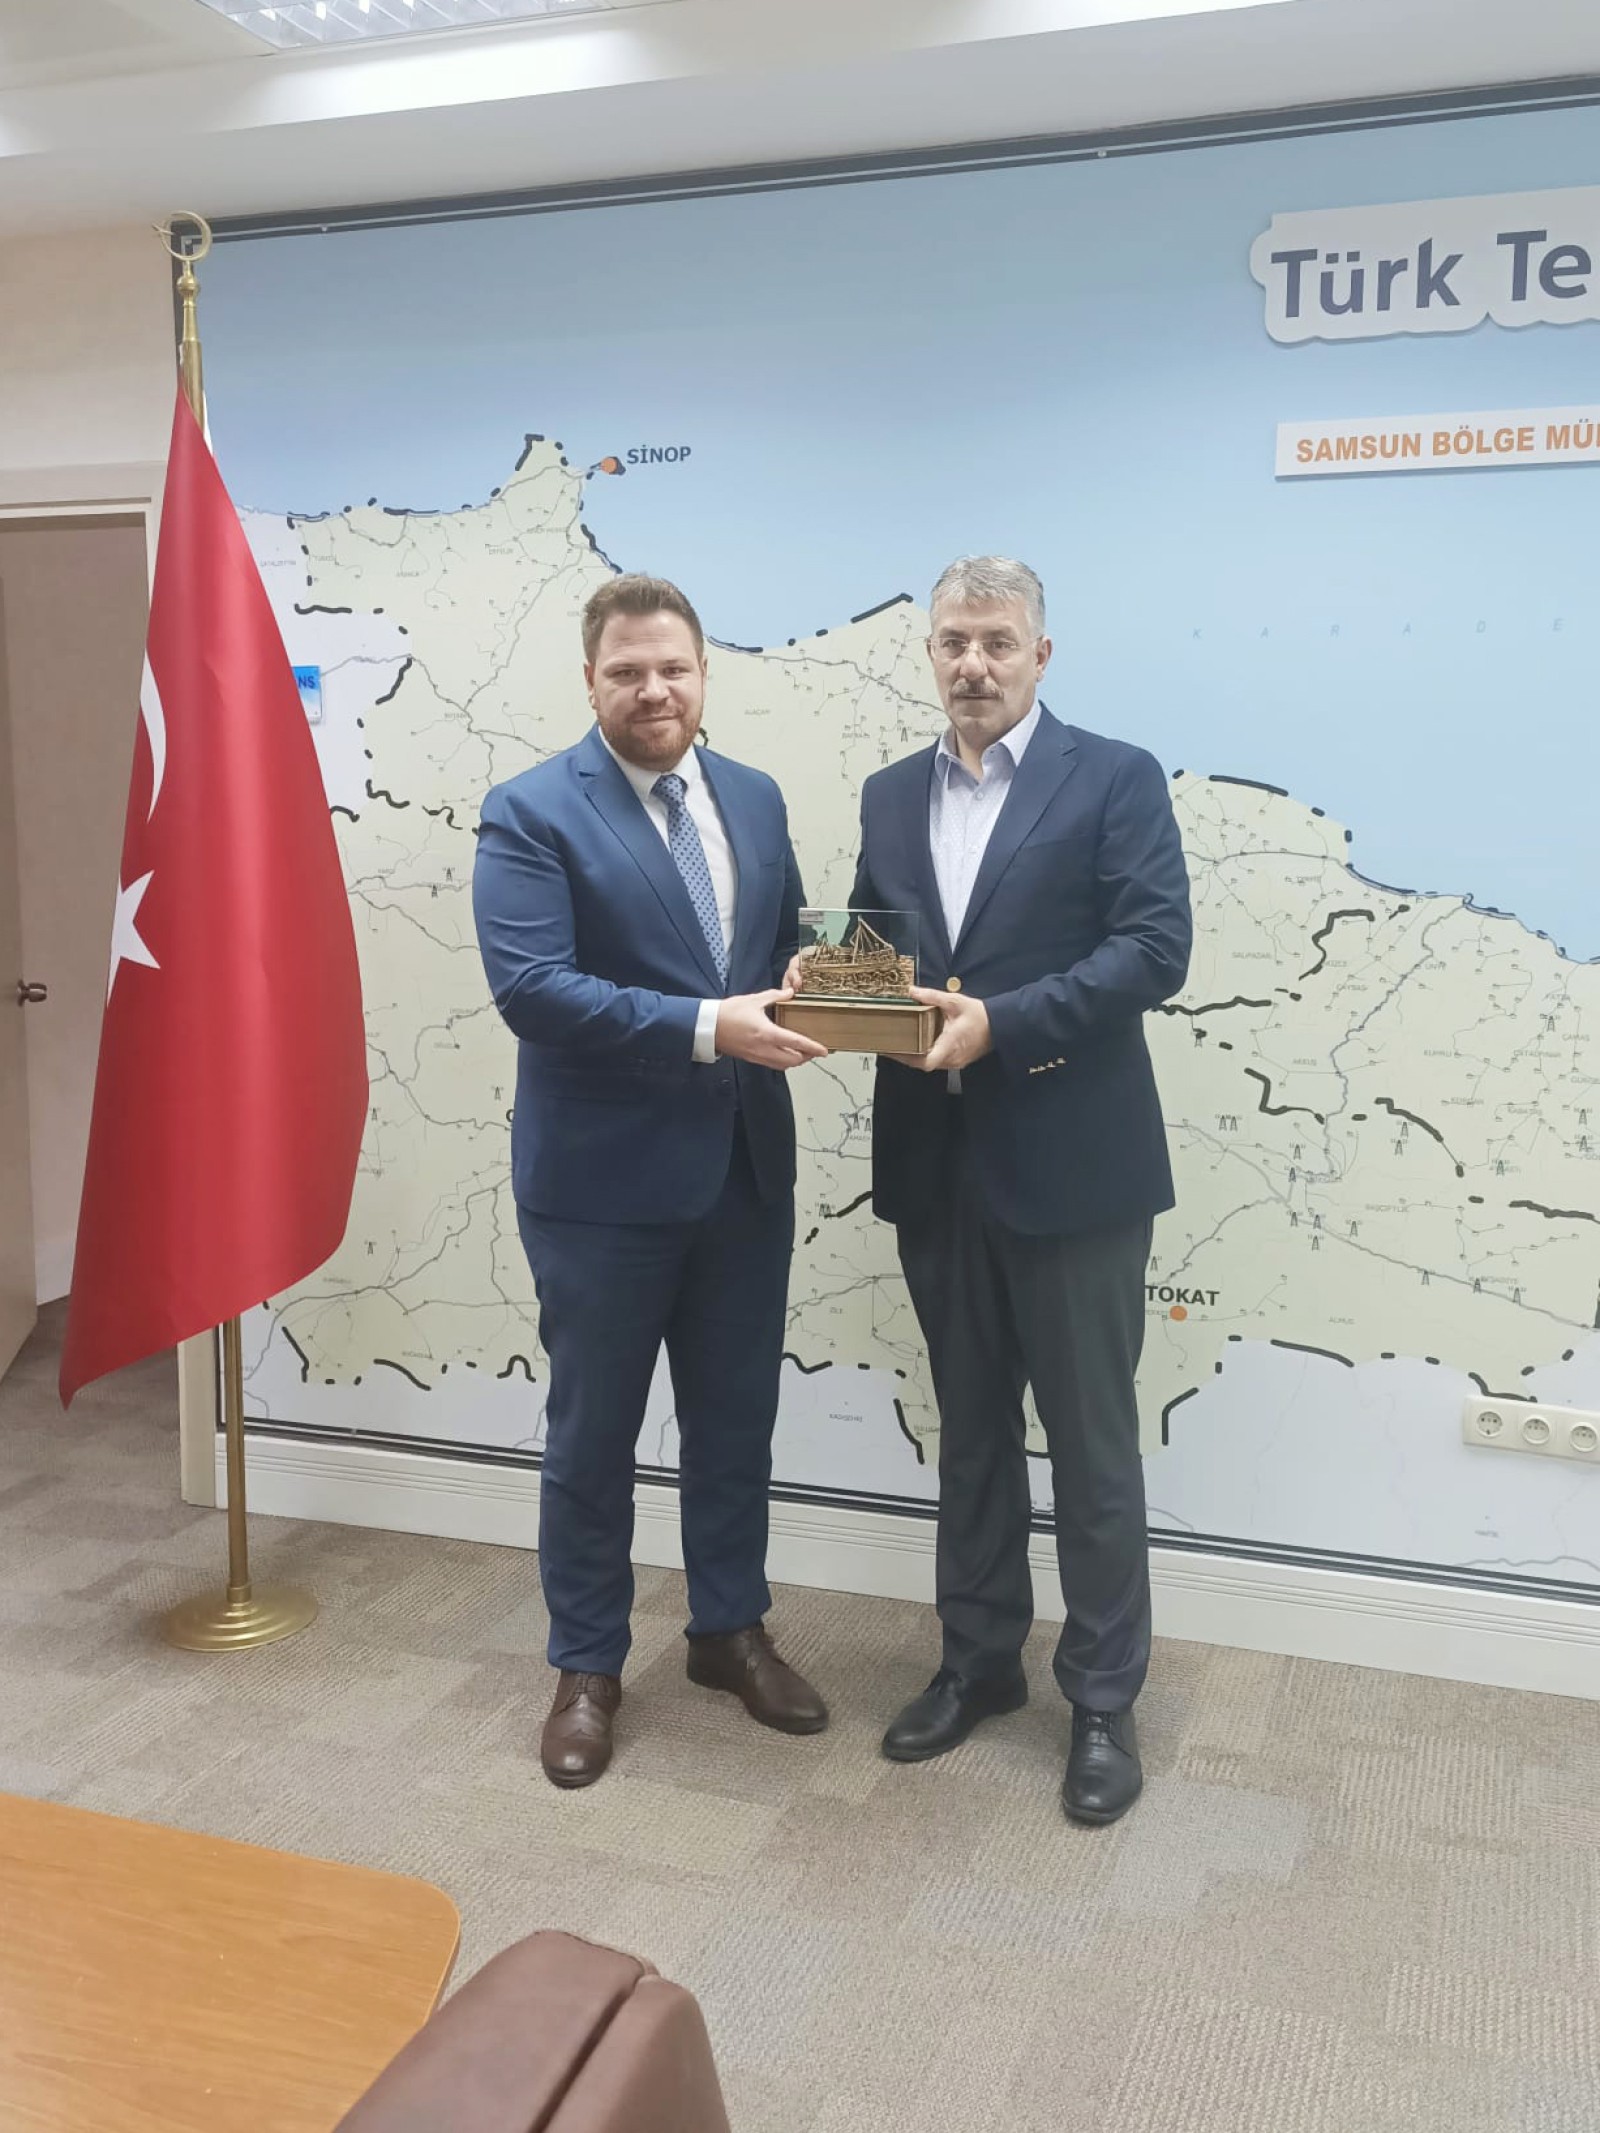 Samsun Teknopark ve OMÜ-TTO’dan, Türk Telekom Samsun Bölge Müdürlüğüne Ziyaret